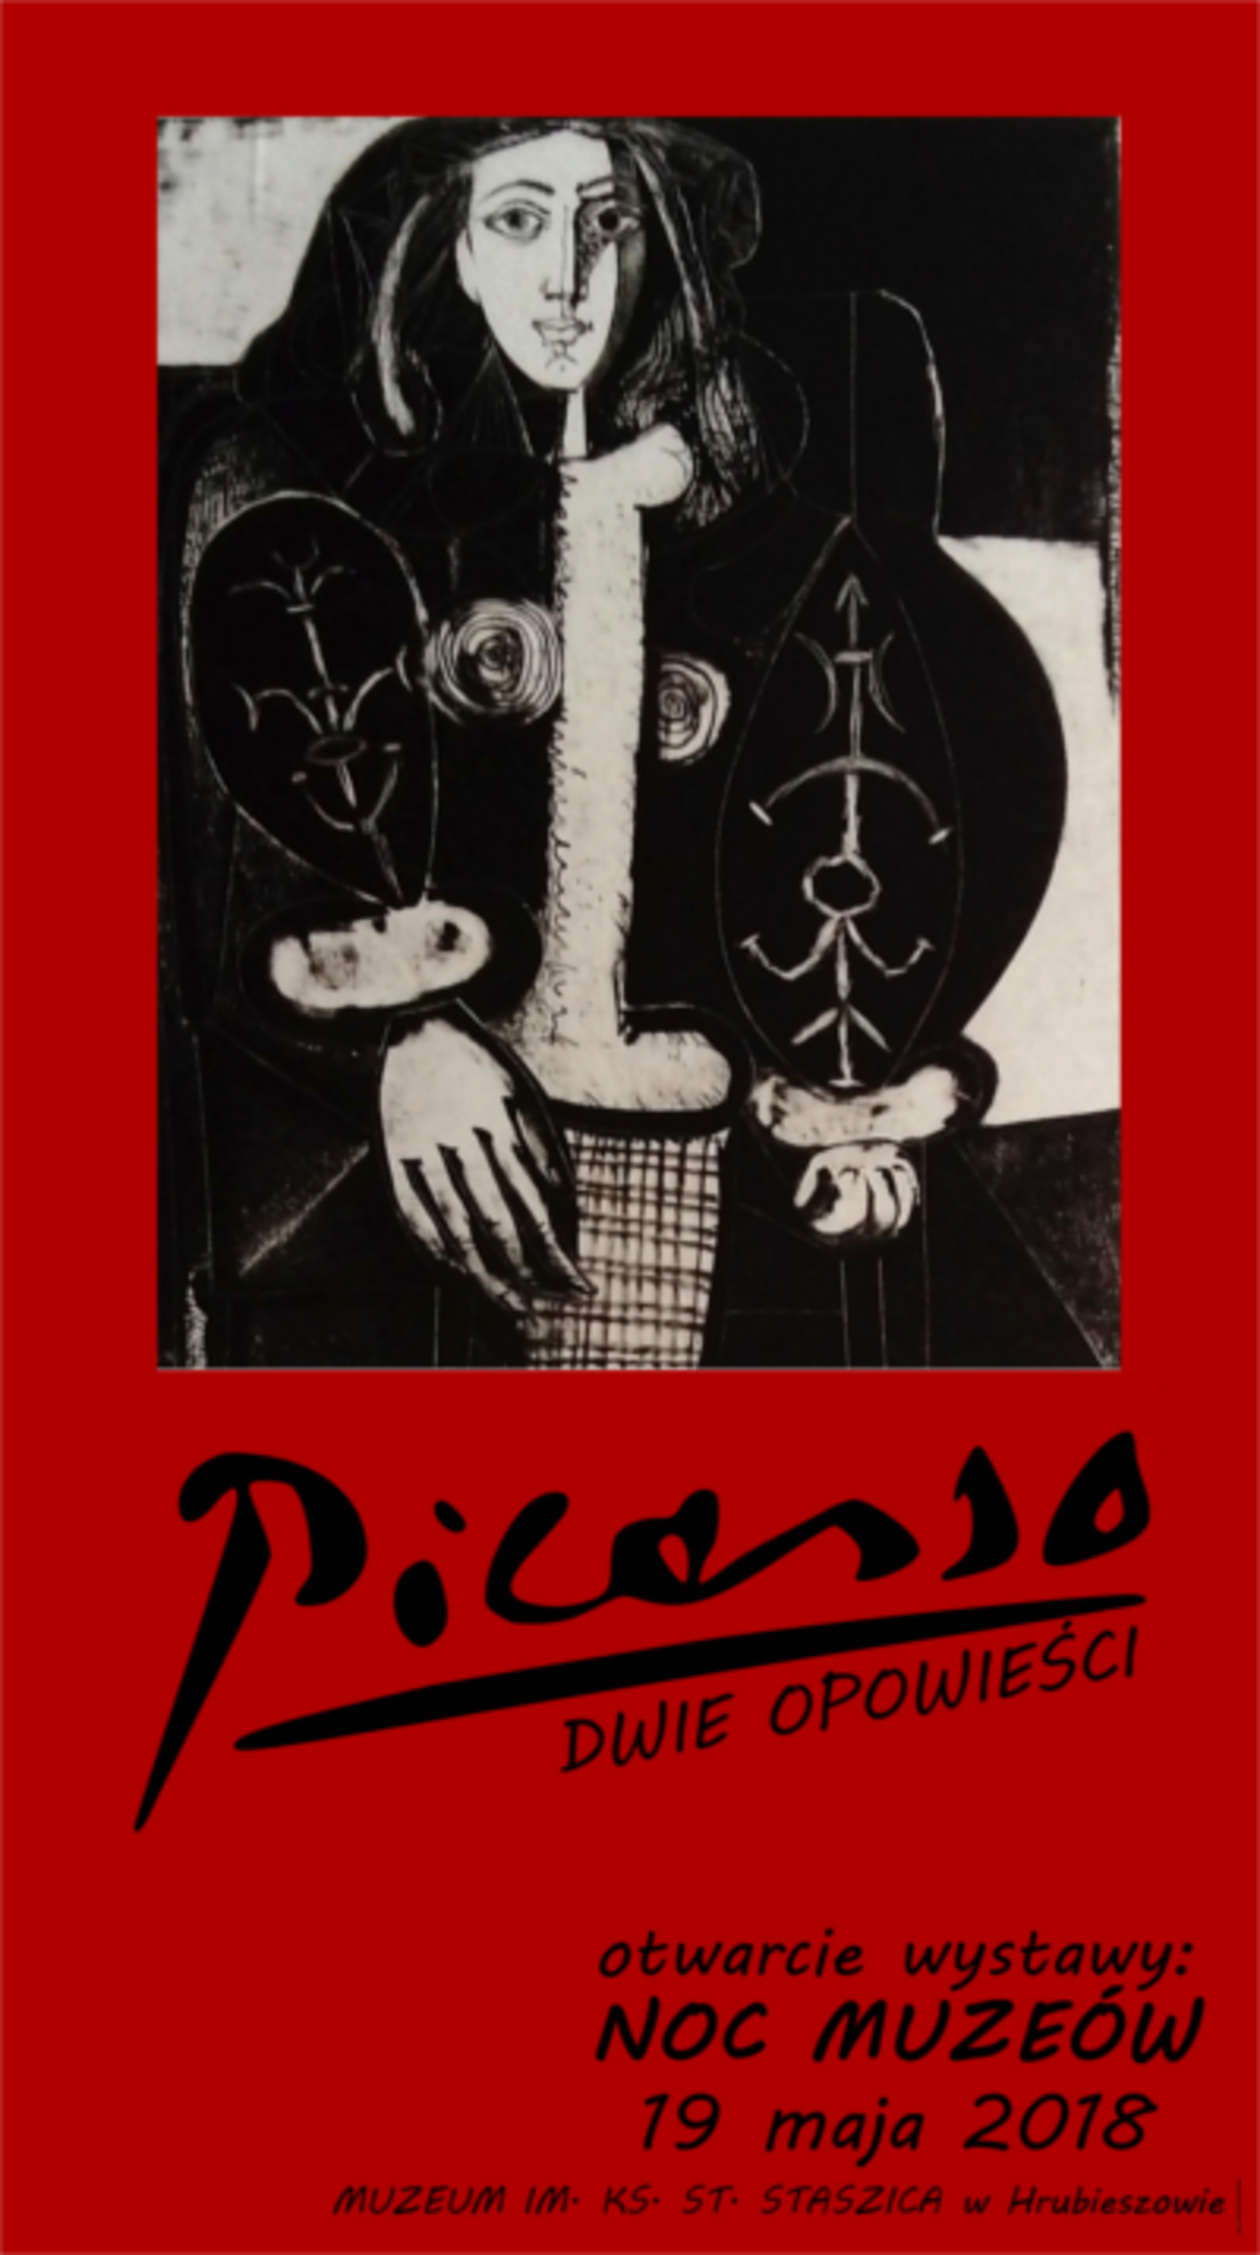  <p><strong>HRUBIESZ&Oacute;W:</strong></p>
<p><strong>Muzeum im. ks. St. Staszica (ul. 3 Maja 11)</strong></p>
<p>- Wieczorem 19 maja 2018 roku, w ramach Nocy Muze&oacute;w, dokonamy uroczystego otwarcia niewielkiej wystawy, wielkiego artysty. Po raz pierwszy i być może po raz ostatni Picasso zagości w Hrubieszowie &ndash; zachęcają organizatorzy.</p>